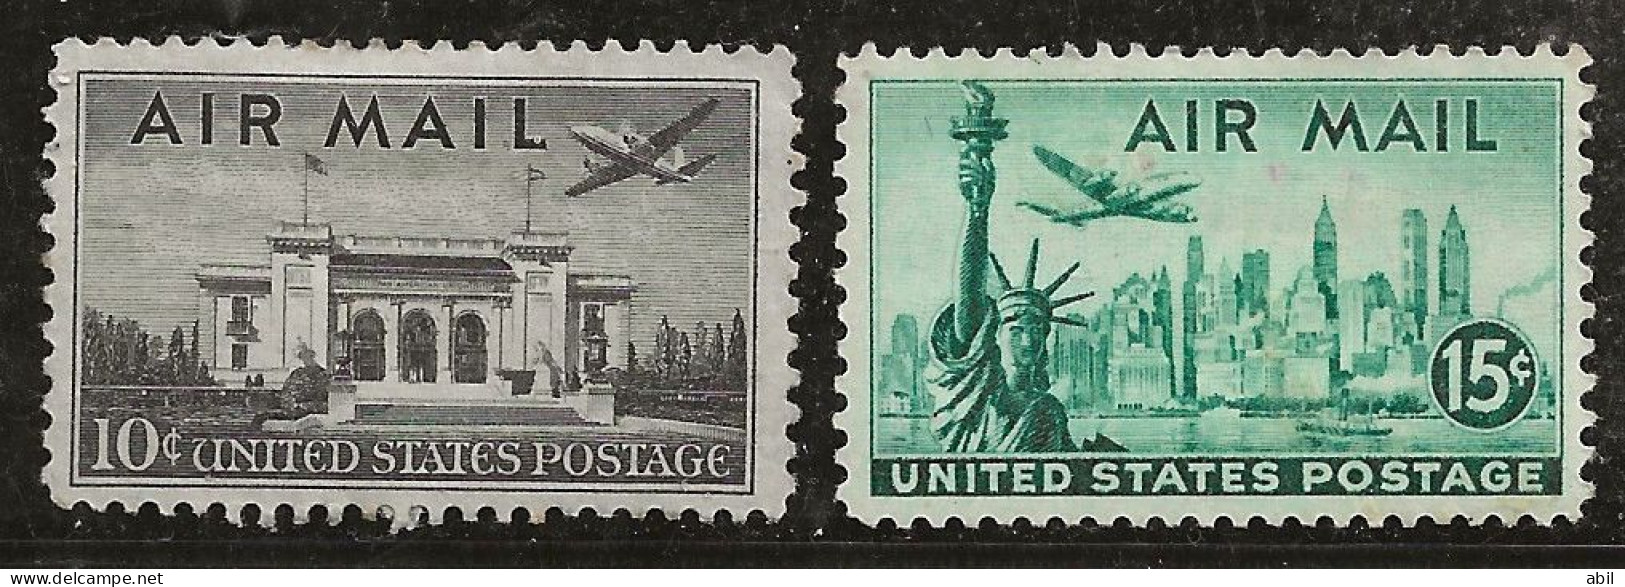 Etats-Unis 1947 N° Y&T :  Av 36 Et 37 * - 2b. 1941-1960 Ongebruikt